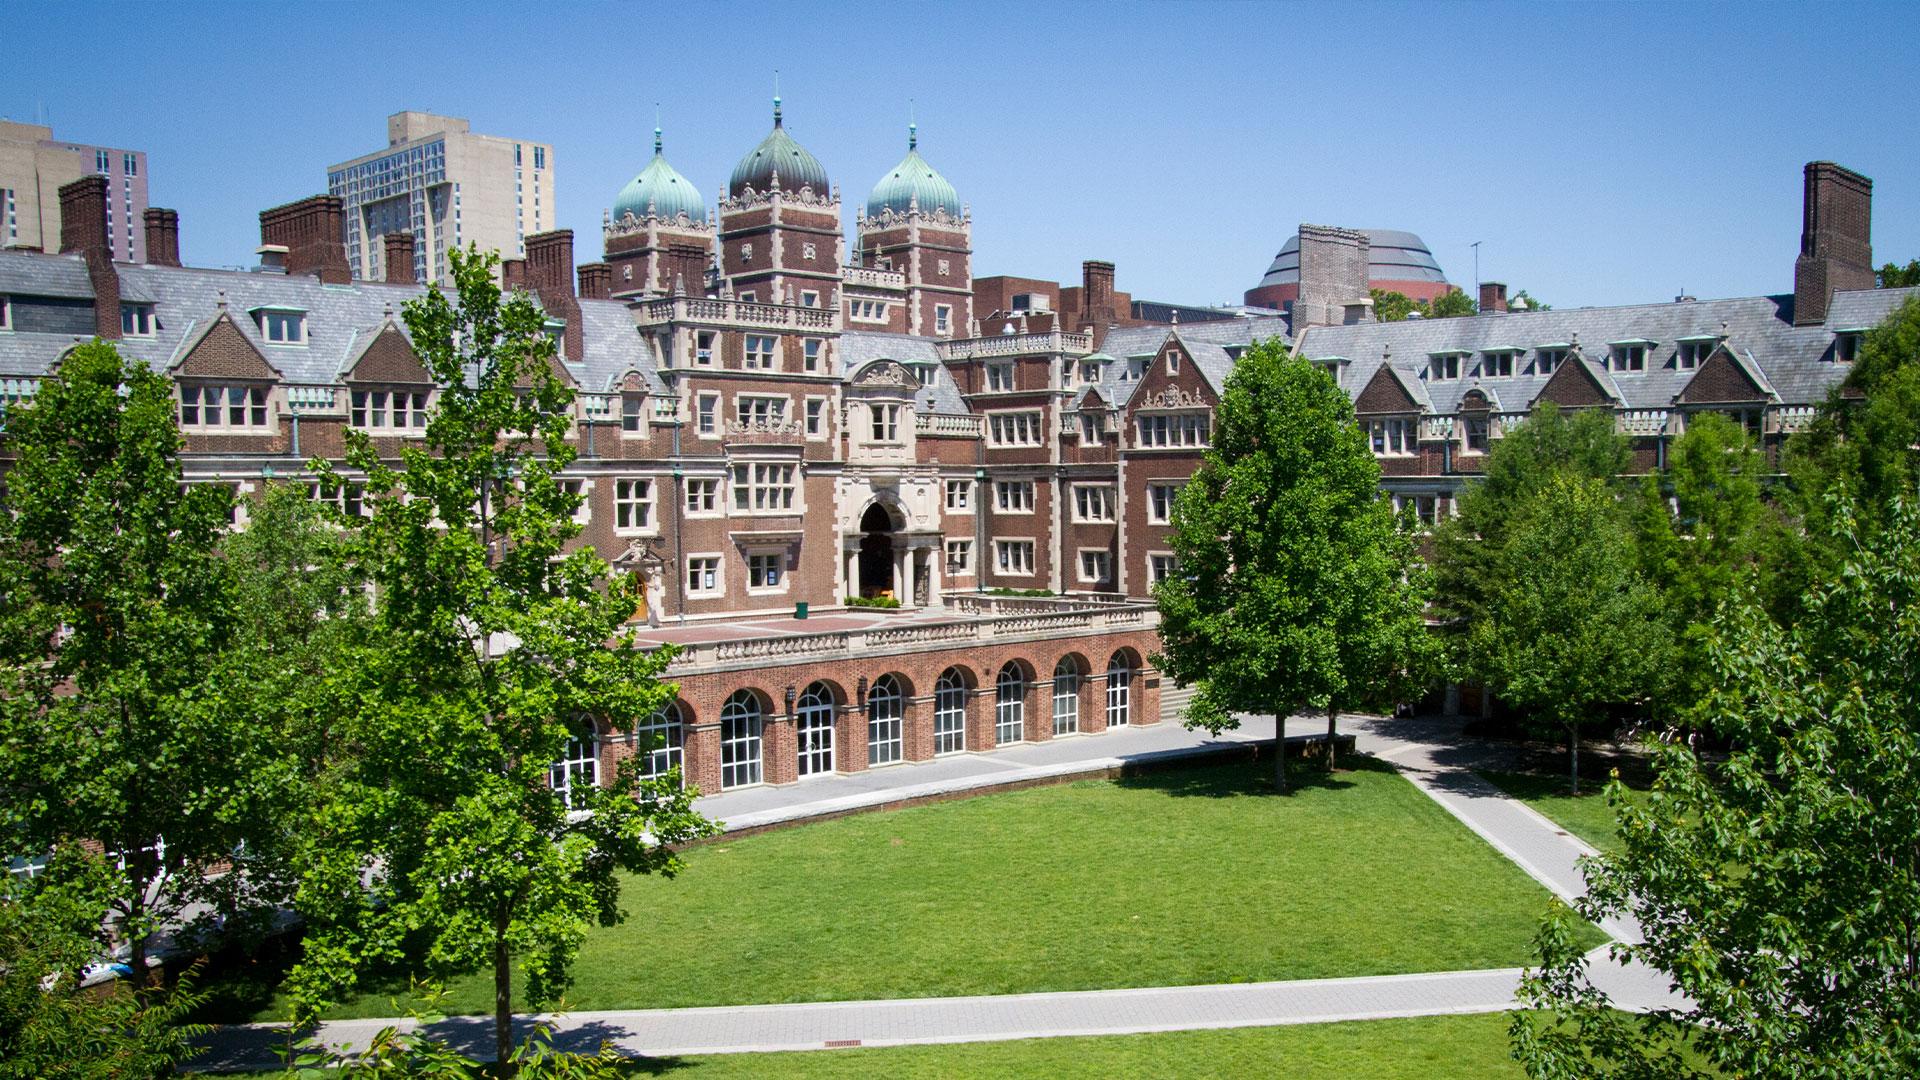 Penn's Campus